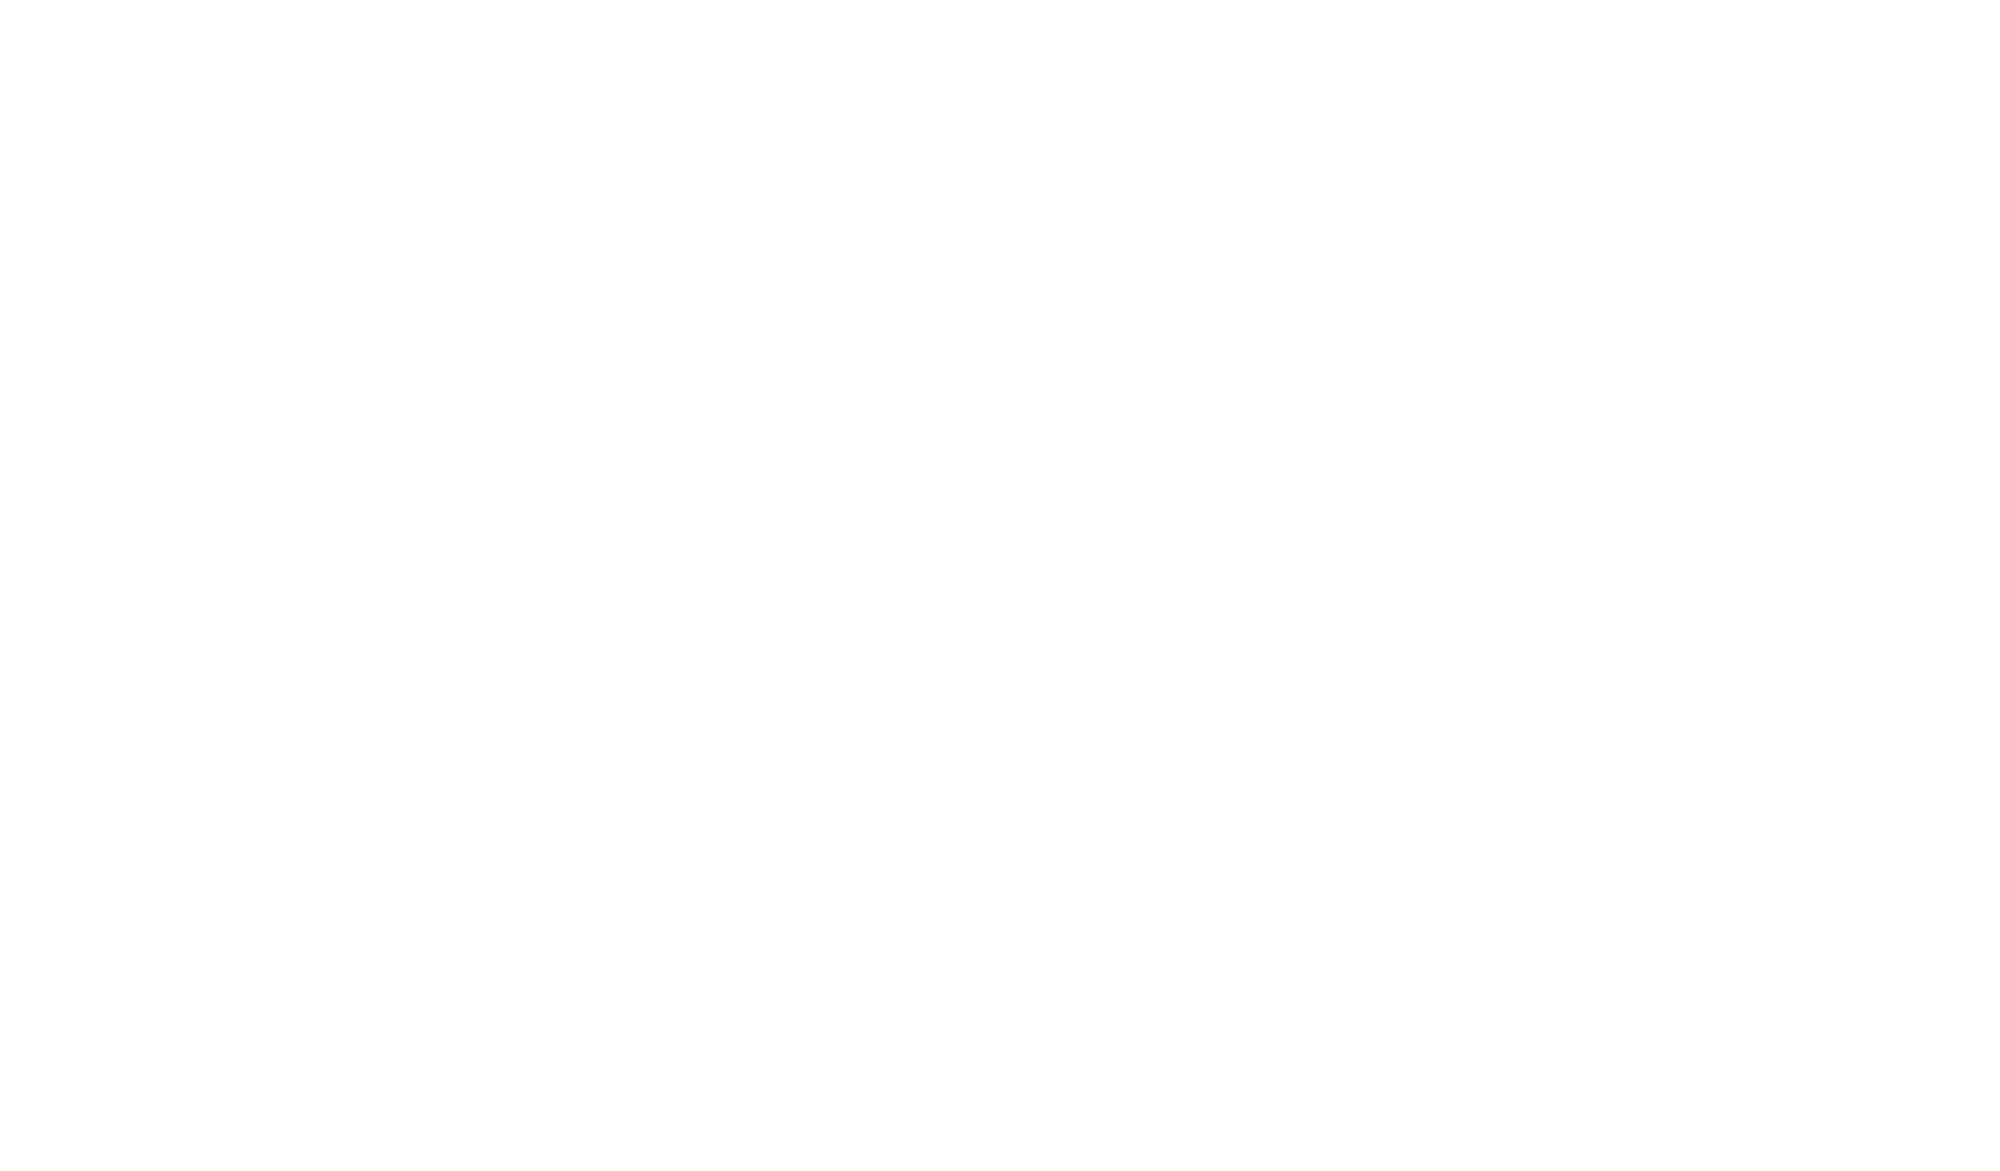 Dr Meulebrouck - Cabinet de médecine esthétique du grand Amiens